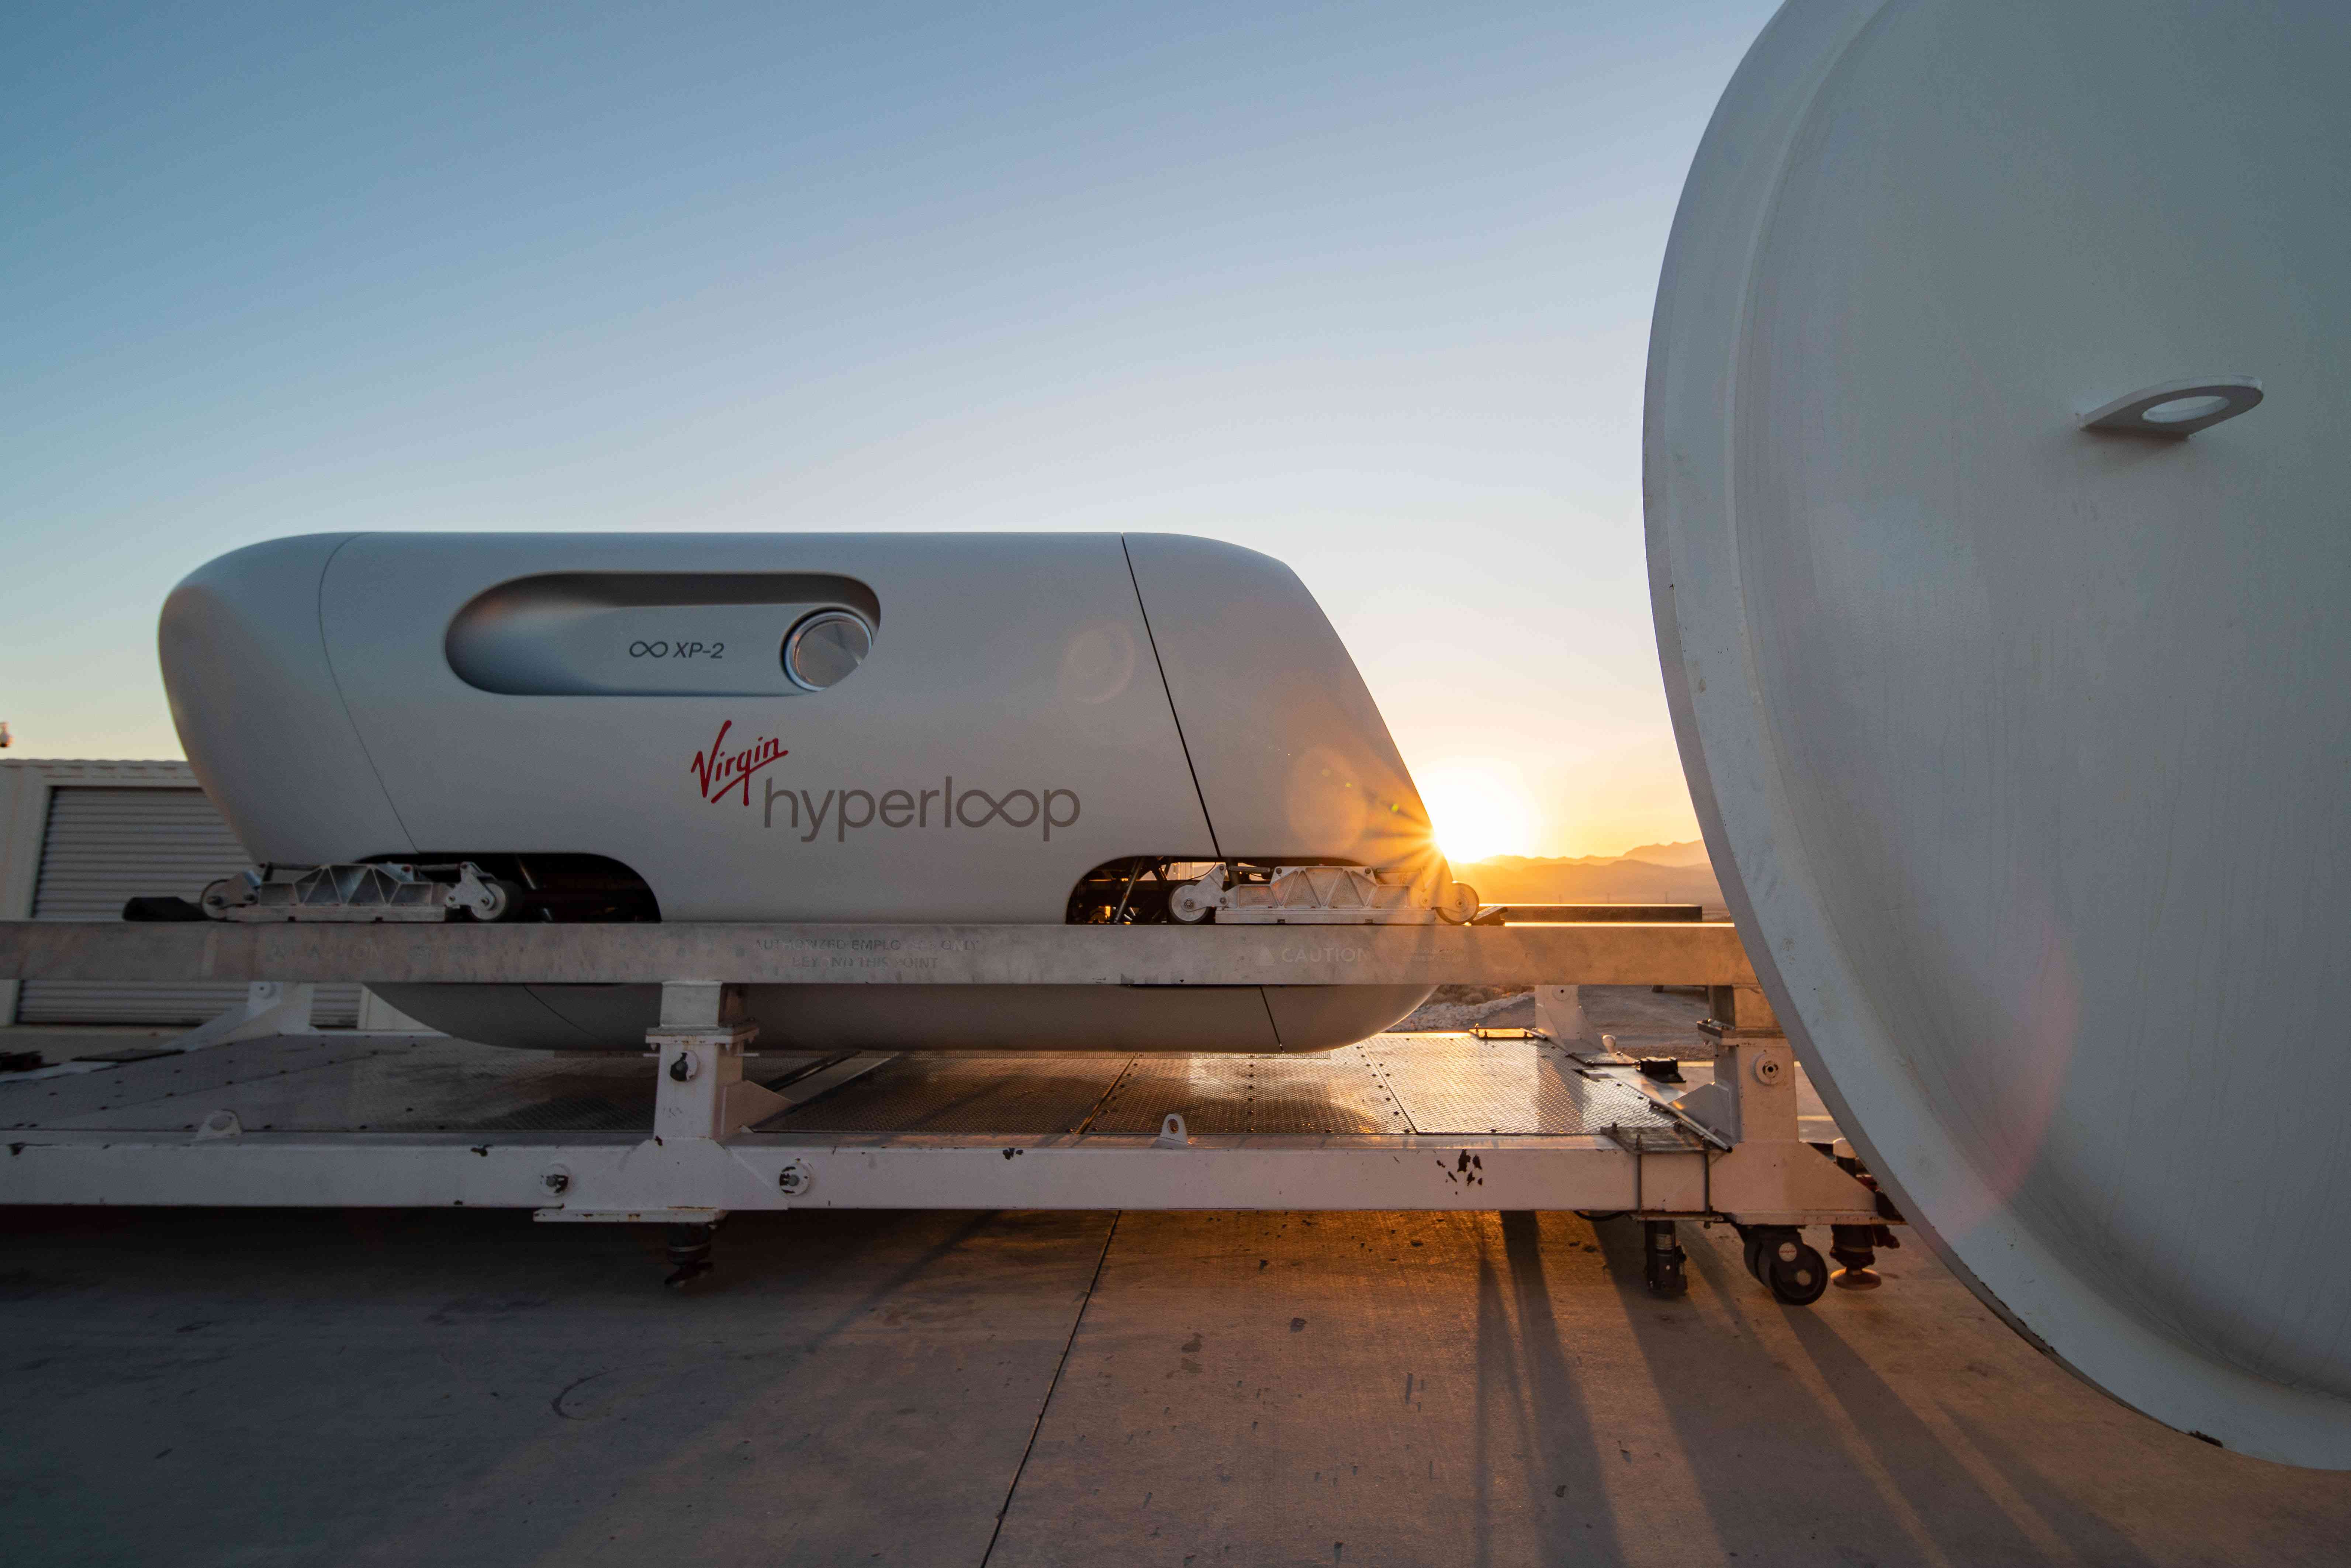 Тестовий стручок Virgin Hyperloop, що лежить на платформі із заходом сонця за ним